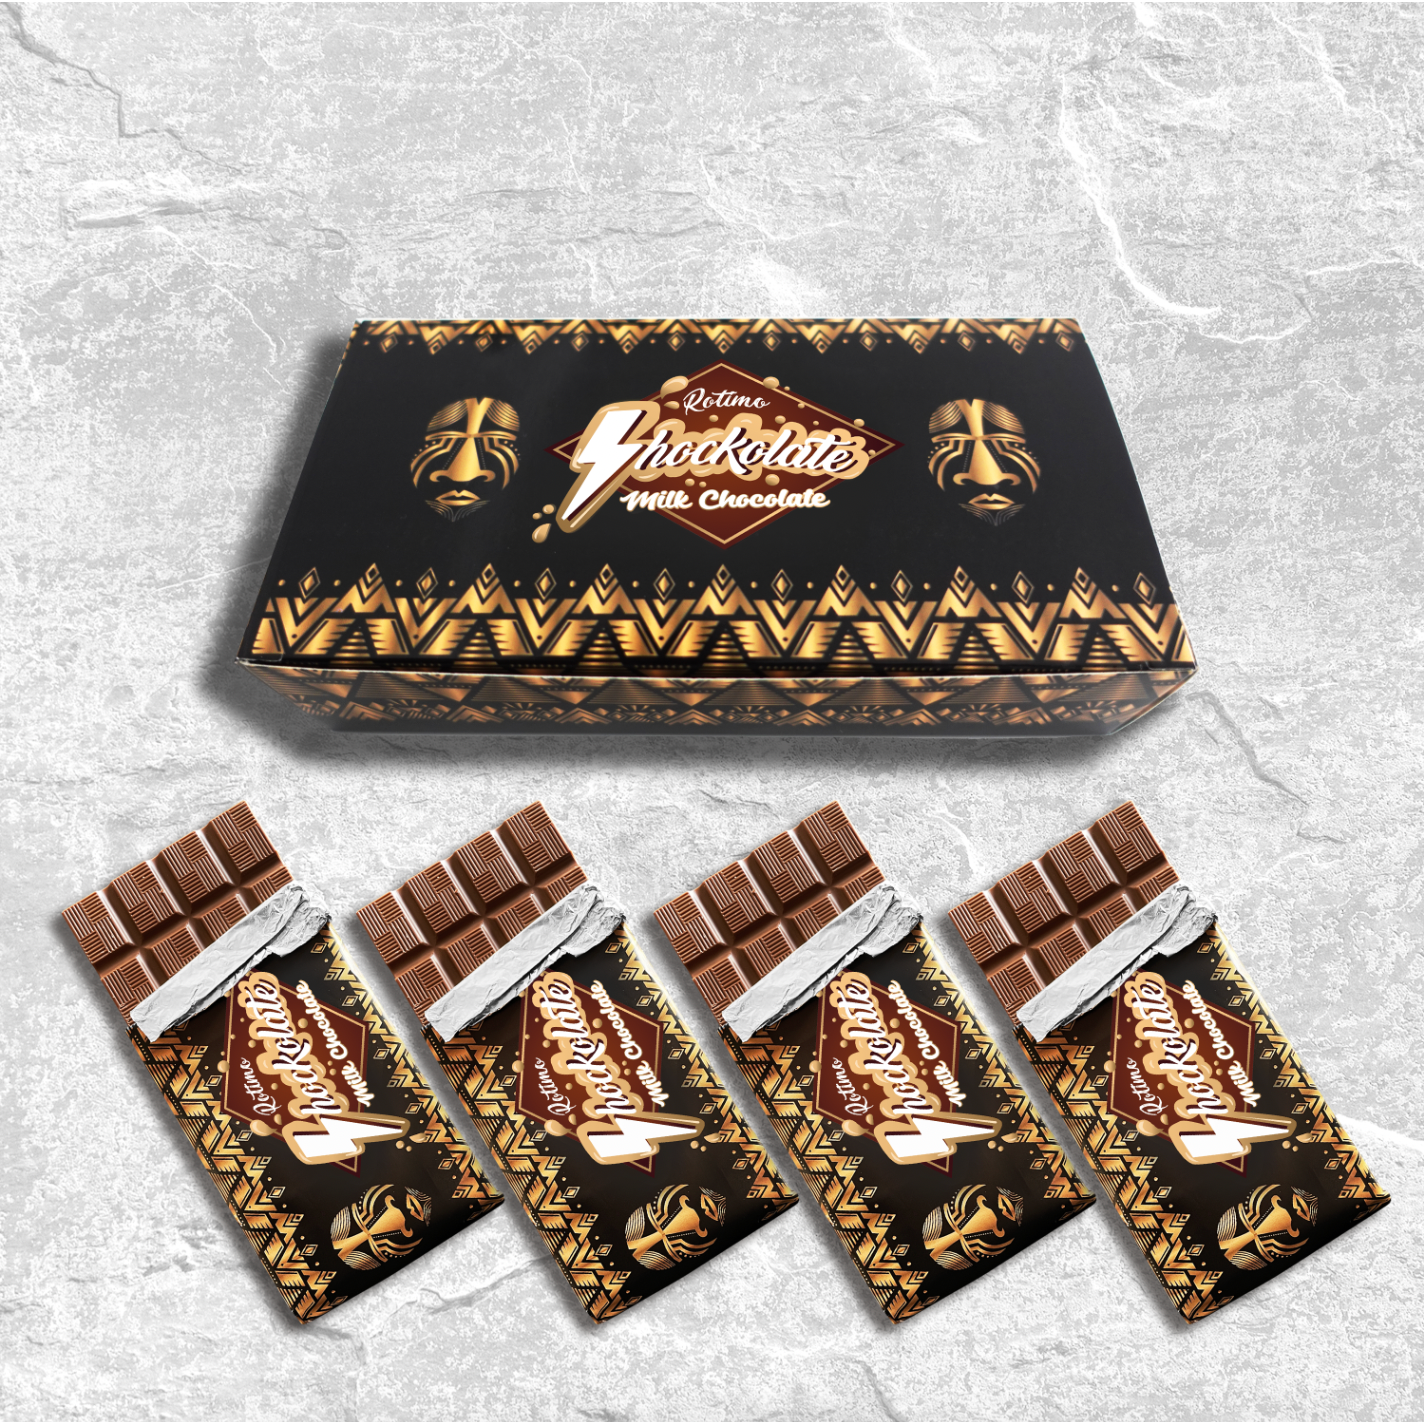 Shockolate Milk Chocolate bars 90g (Pack of 4)